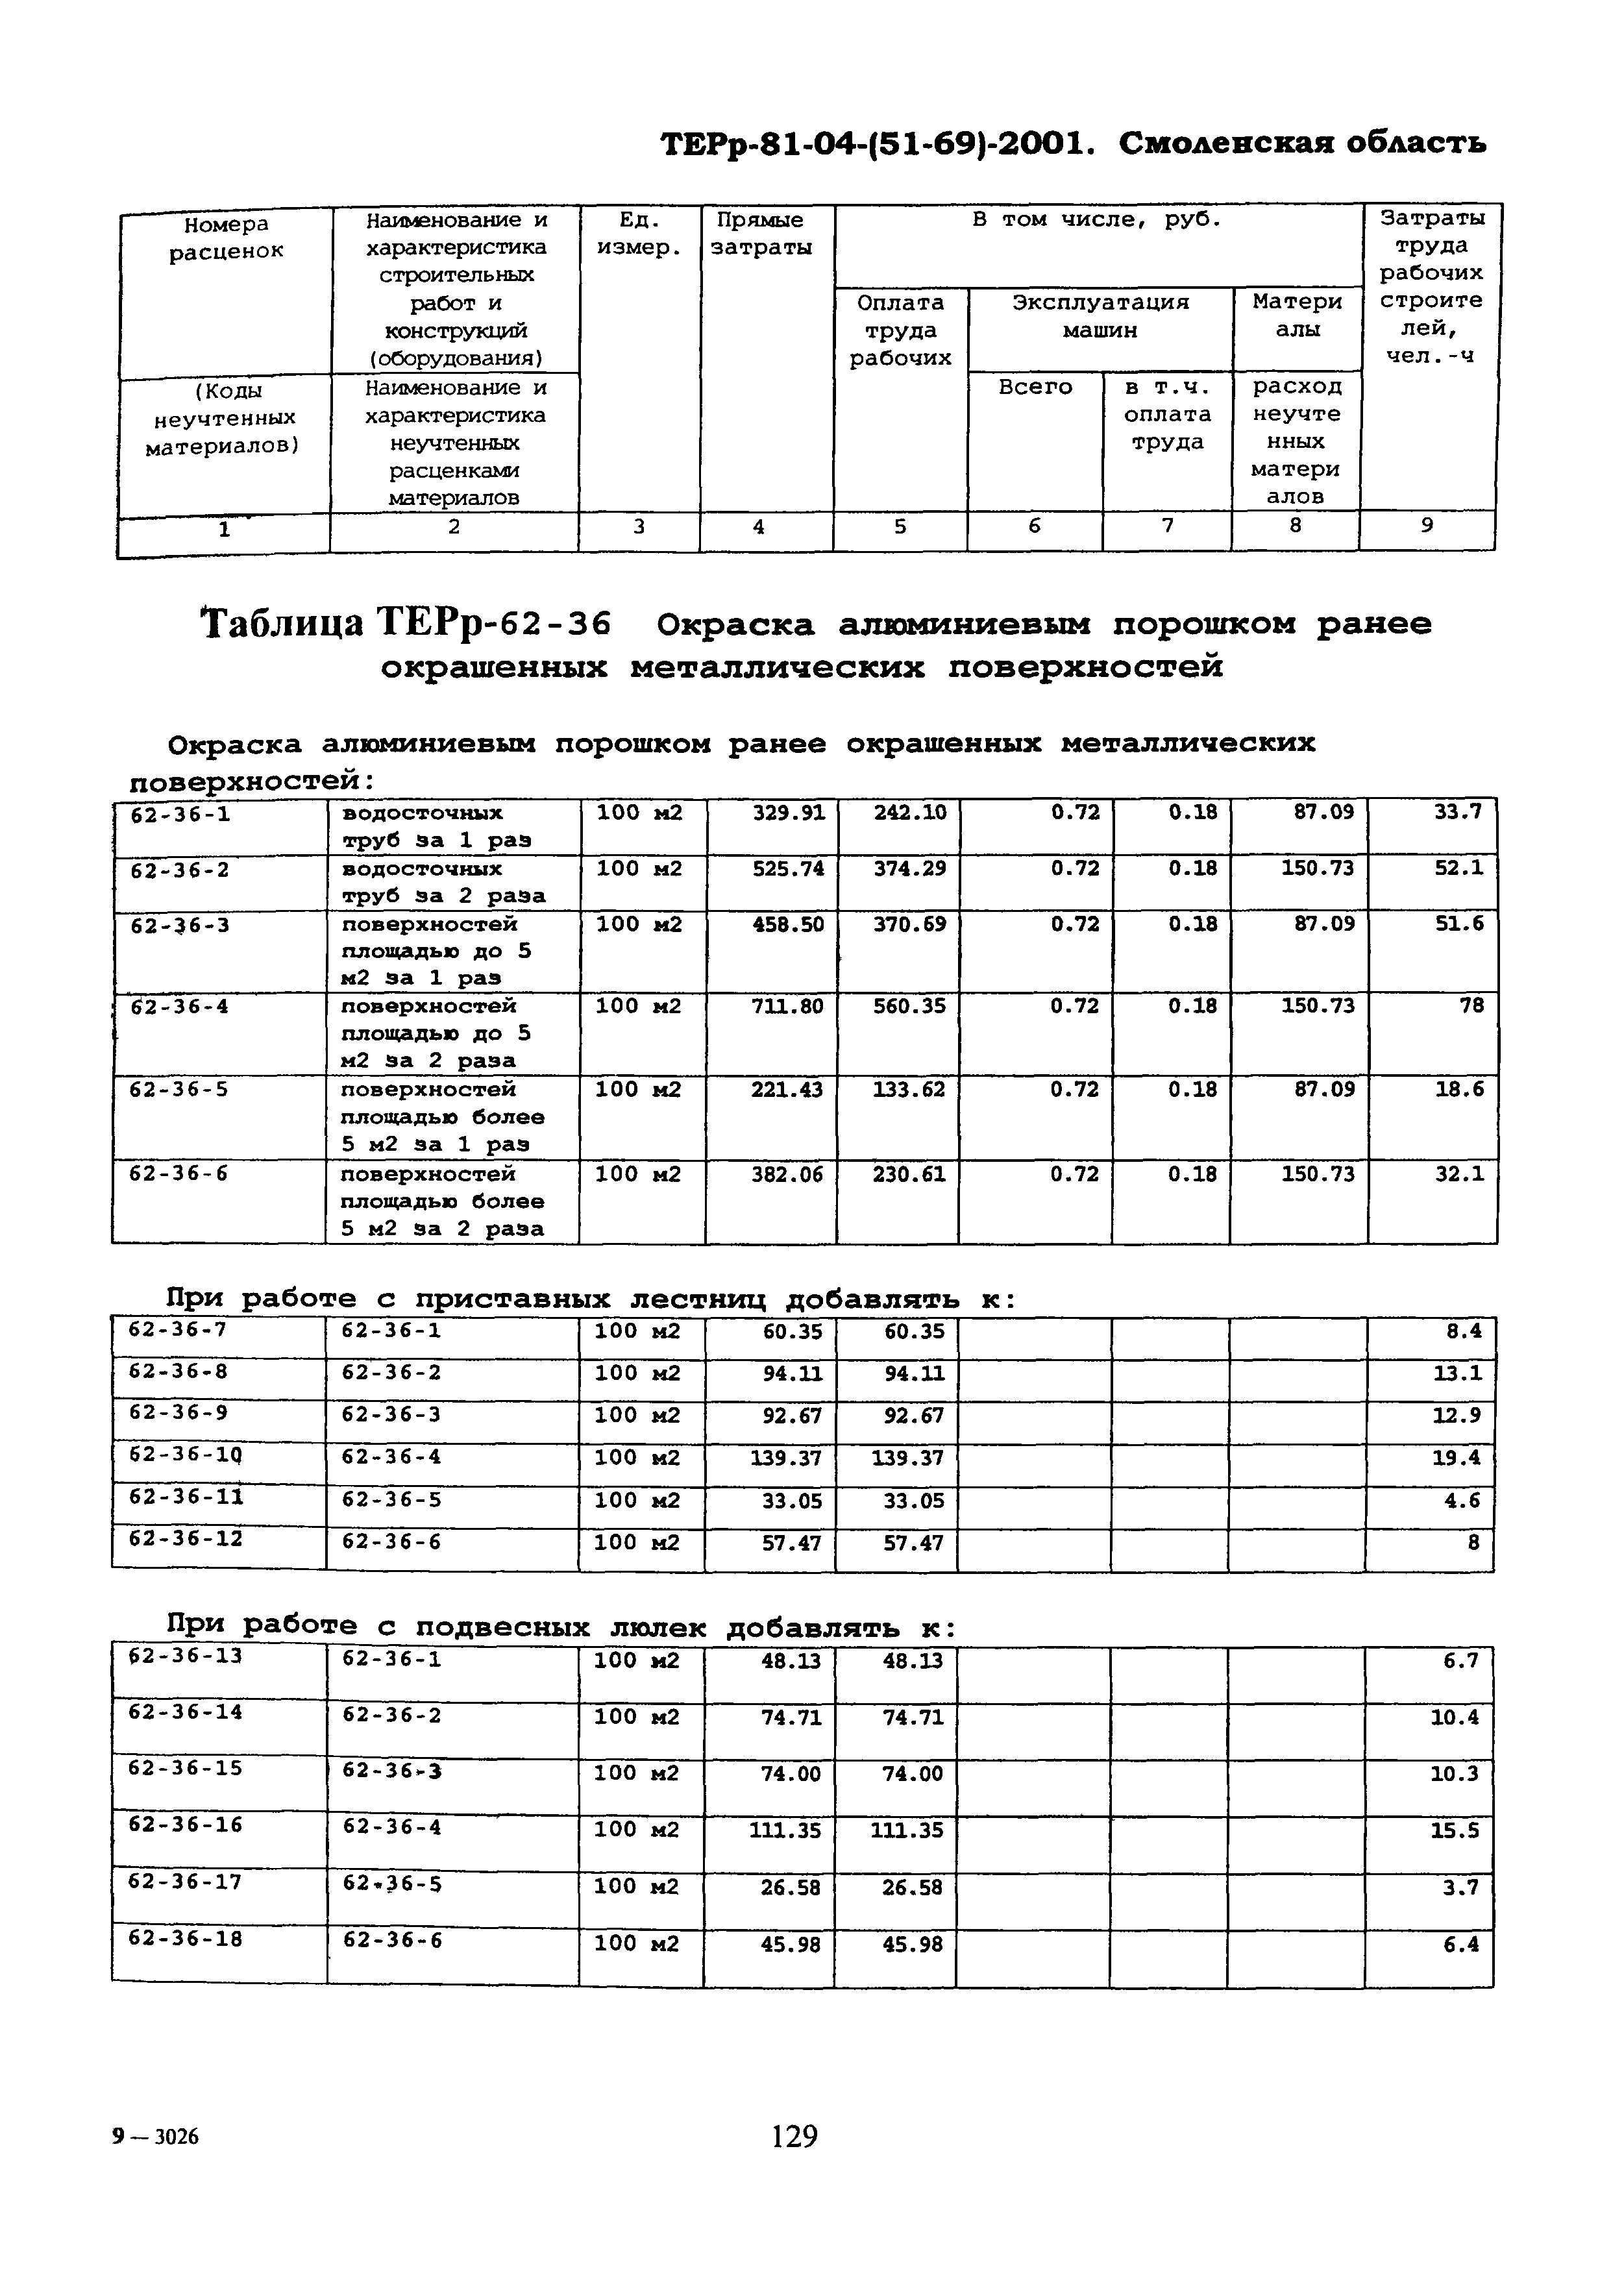 ТЕРр Смоленской области 2001-62